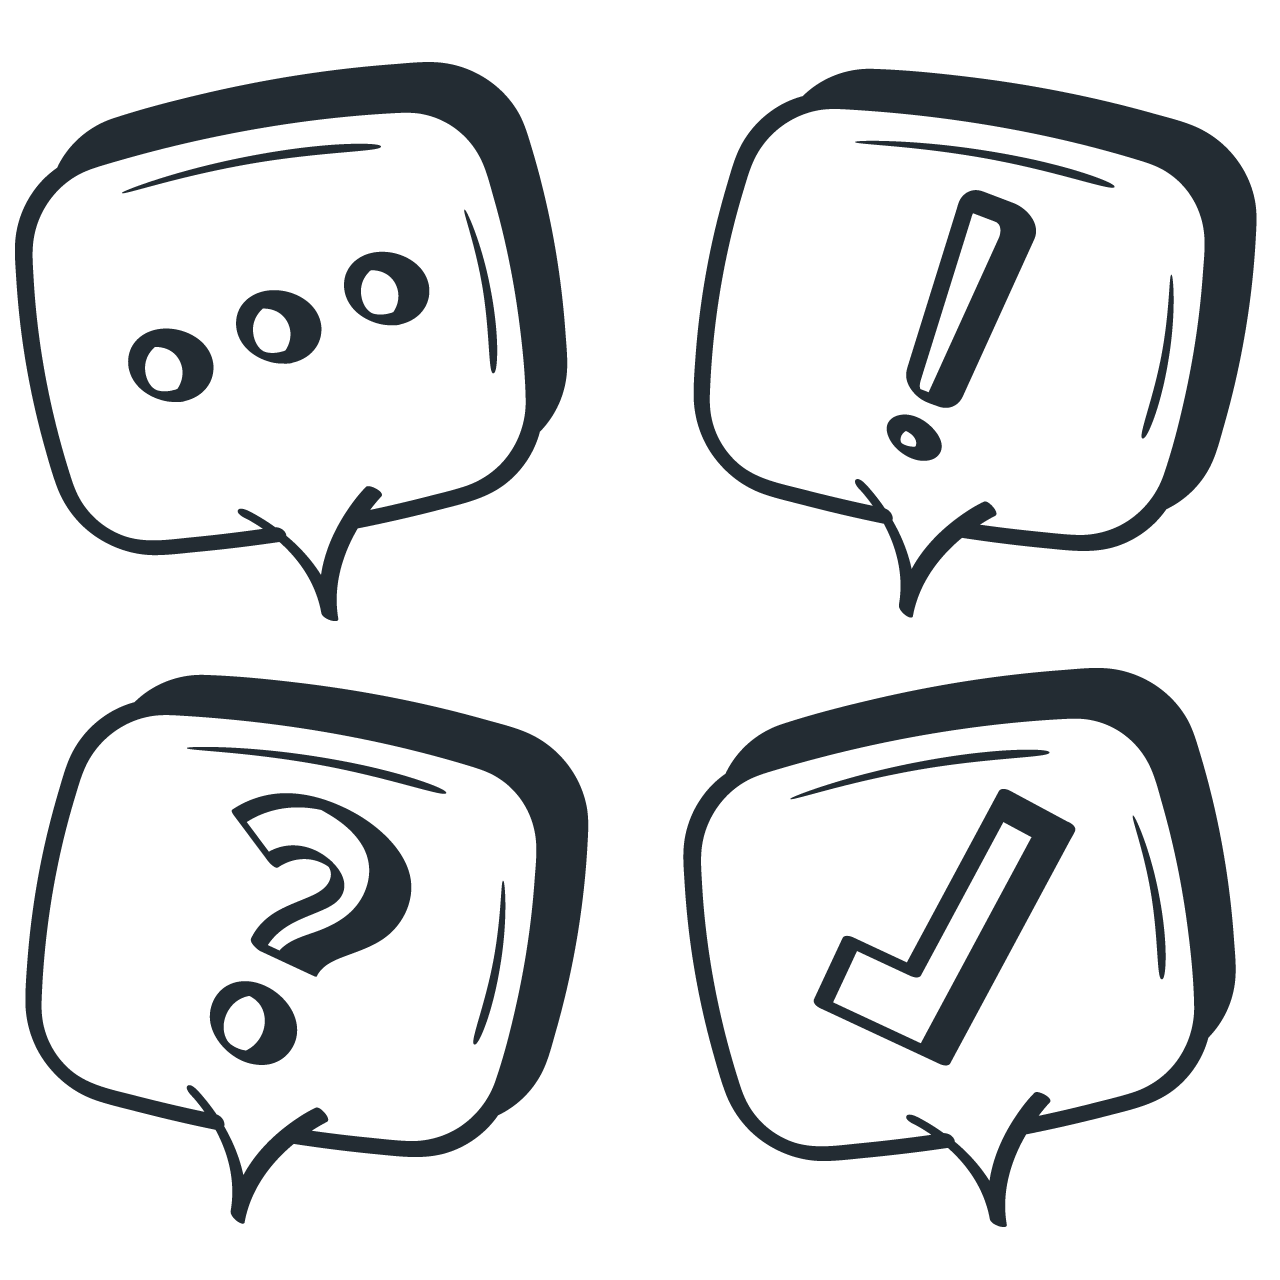 Speech bubbles symbol chat social media icon alert question checklist doodle transparent background png